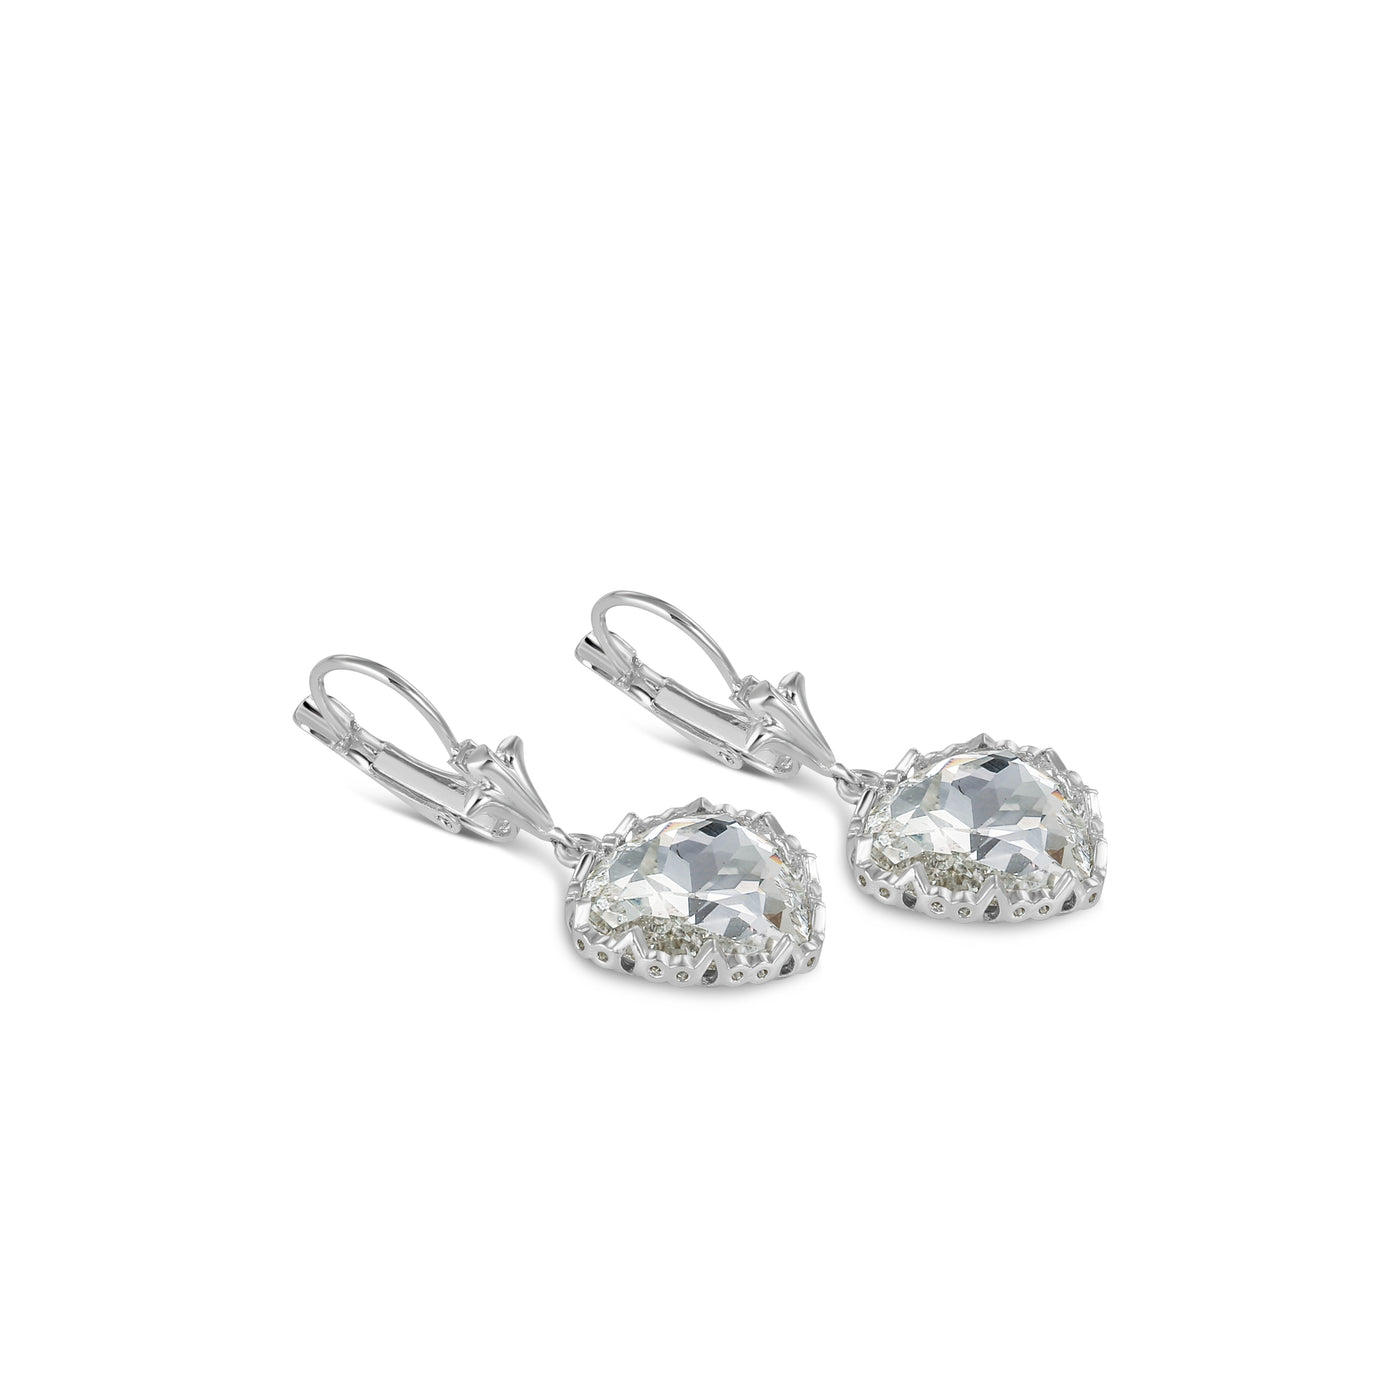 Newbridge Silverware Earrings - Clear Stone Heart